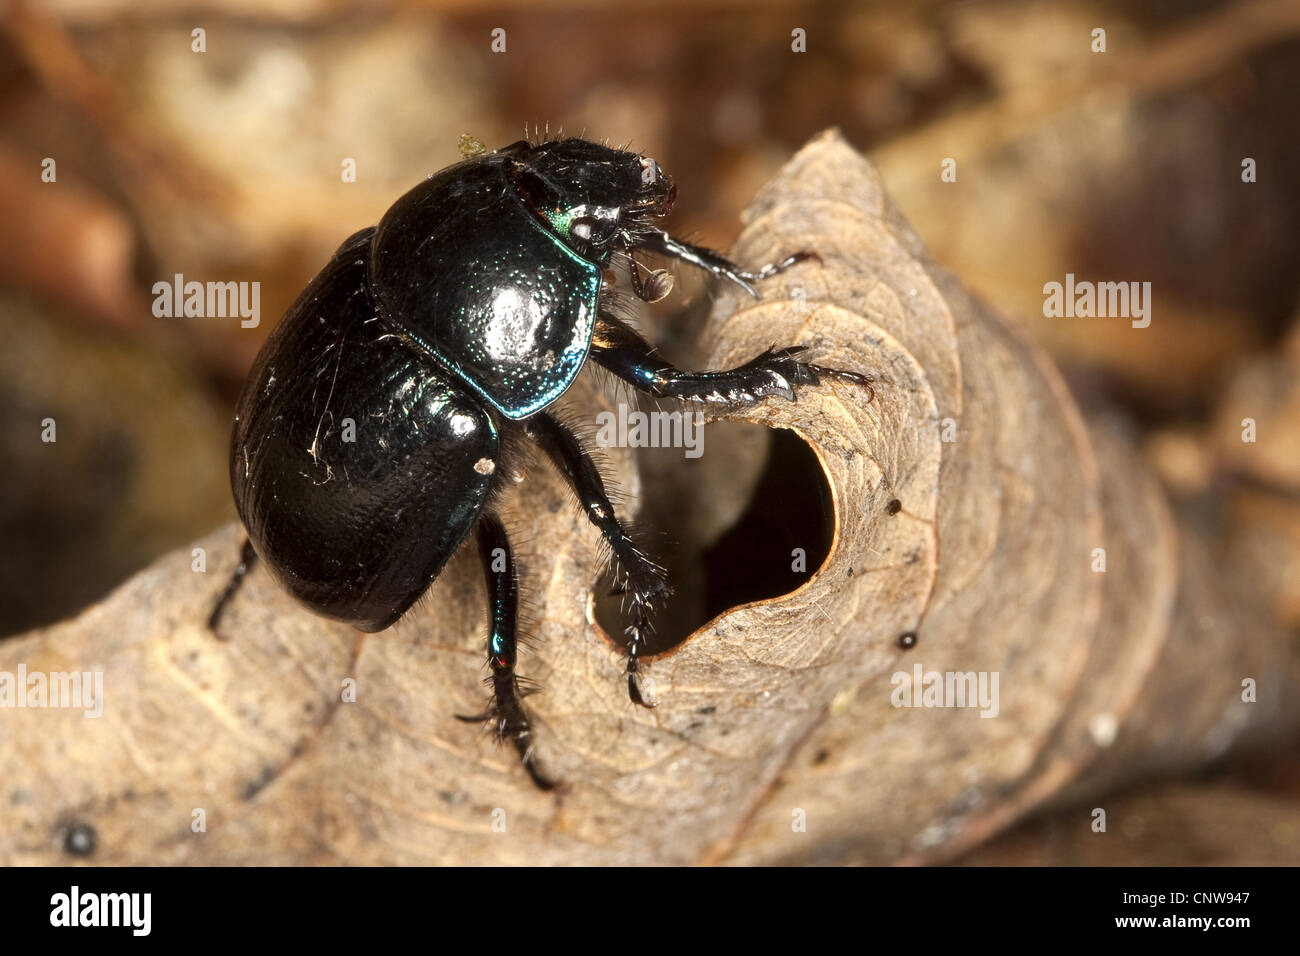 Rosskaefercommon dor escarabajo, escarabajos del estiércol (Anoplotrupes stercorosus, Geotrupes stercorosus) en una hoja de otoño, Alemania Foto de stock